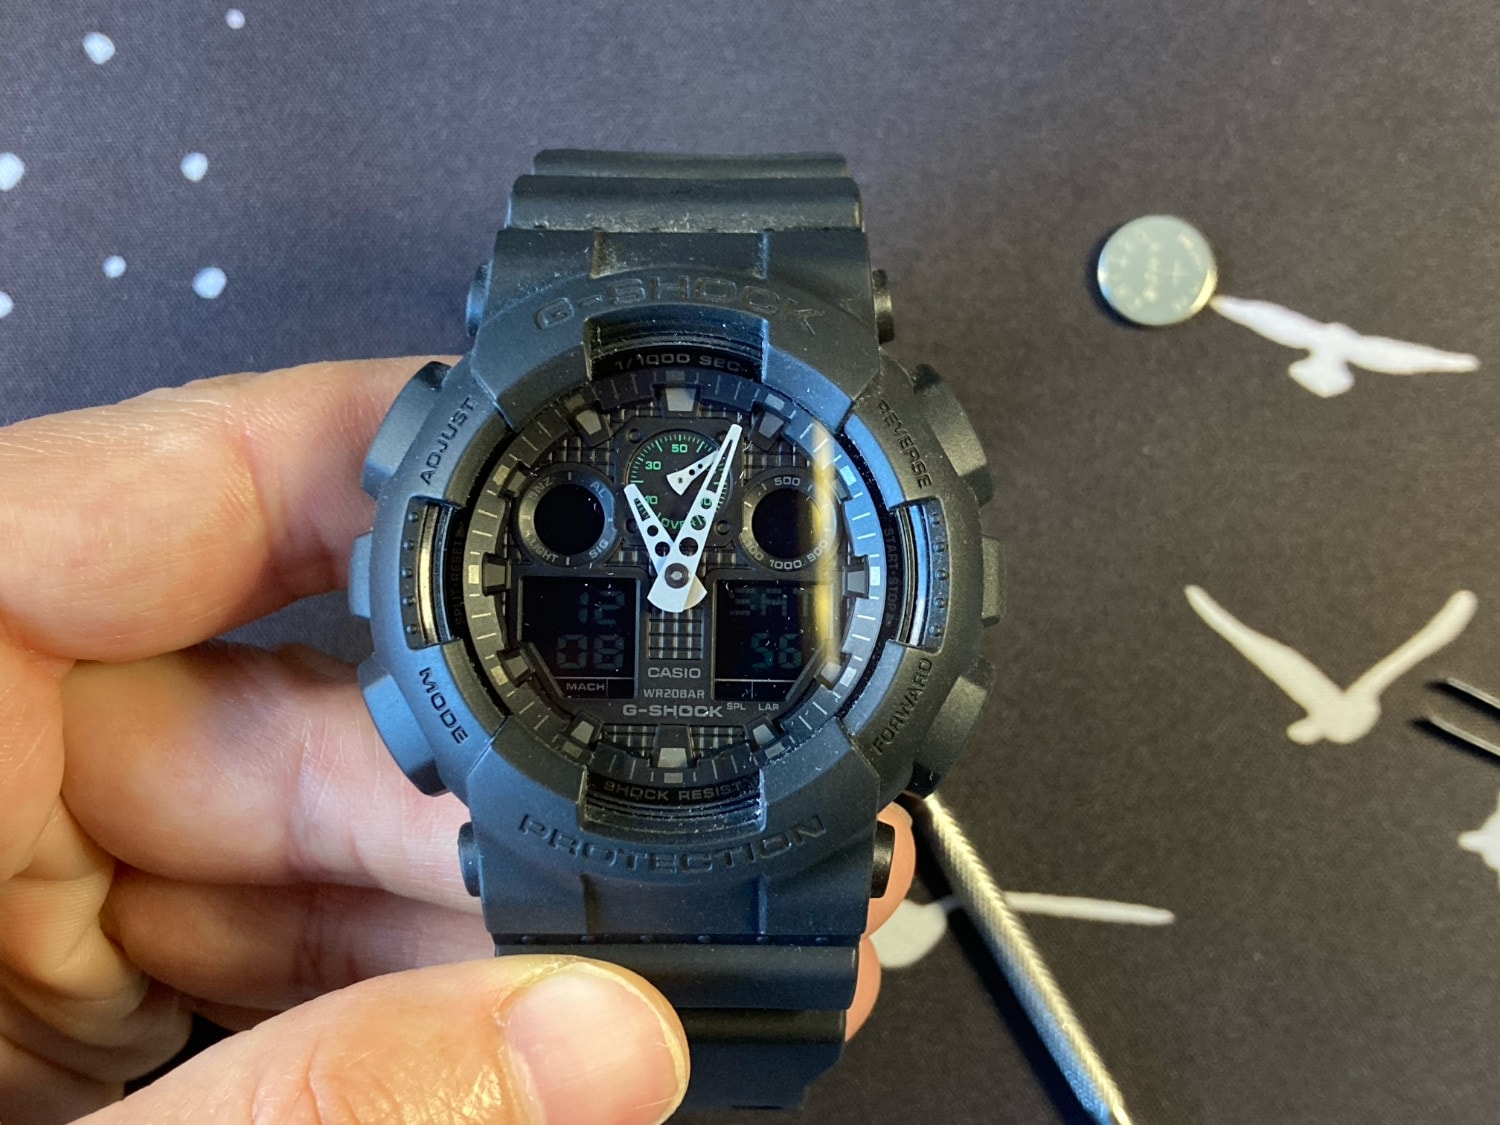 Guía para cambiar la pila del Casio G-Shock GA-100: montas la tapa trasera y pones en hora el reloj. 